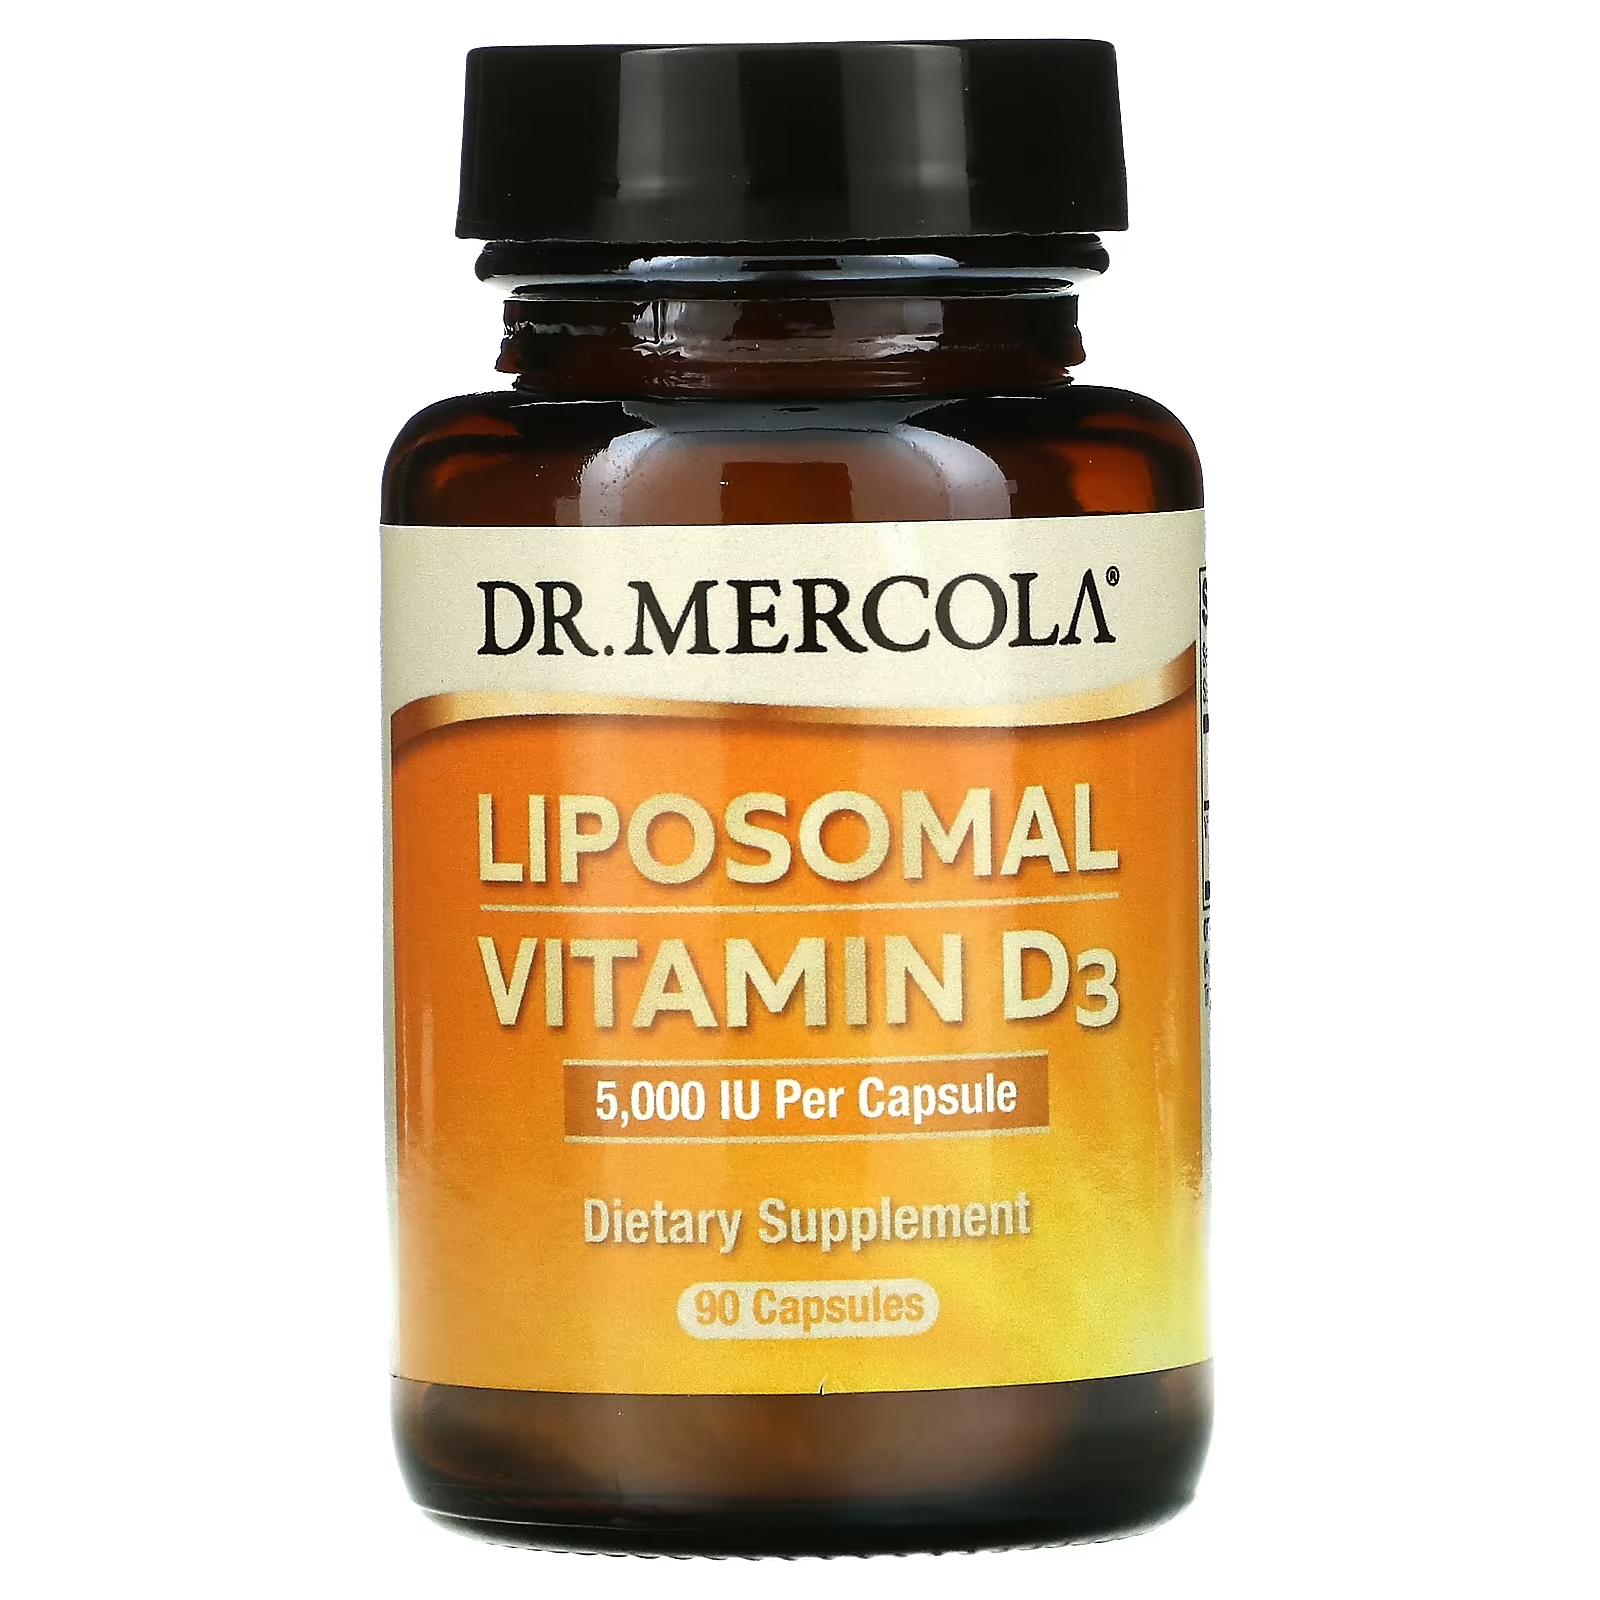 Dr. Mercola липосомальный витамин D3 5000 МЕ, 90 капсул dr mercola липосомальный витамин d3 5000 ме 90 капсул